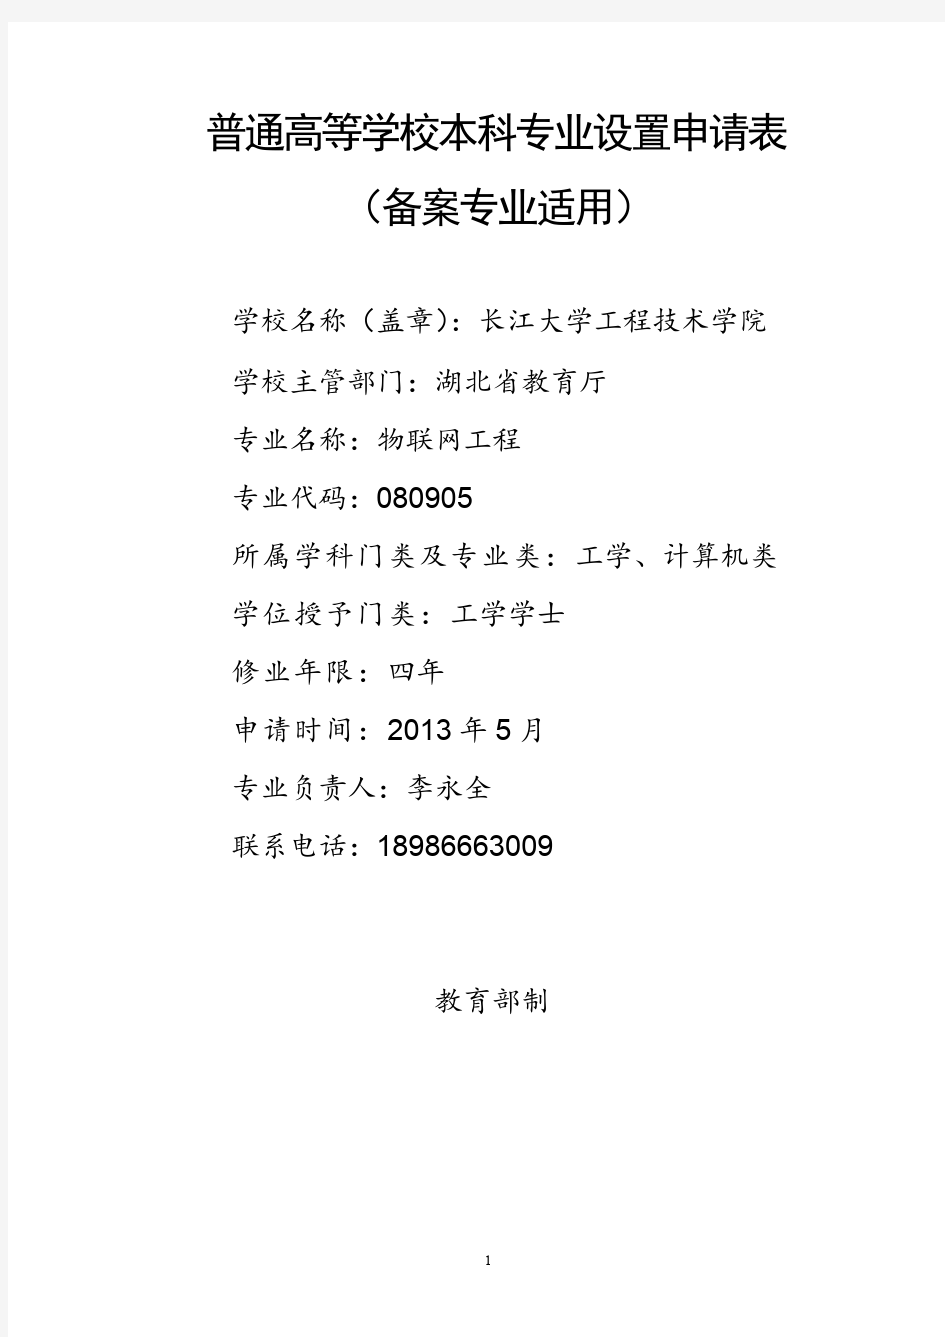 长江大学工程技术学院物联网工程专业申请材料